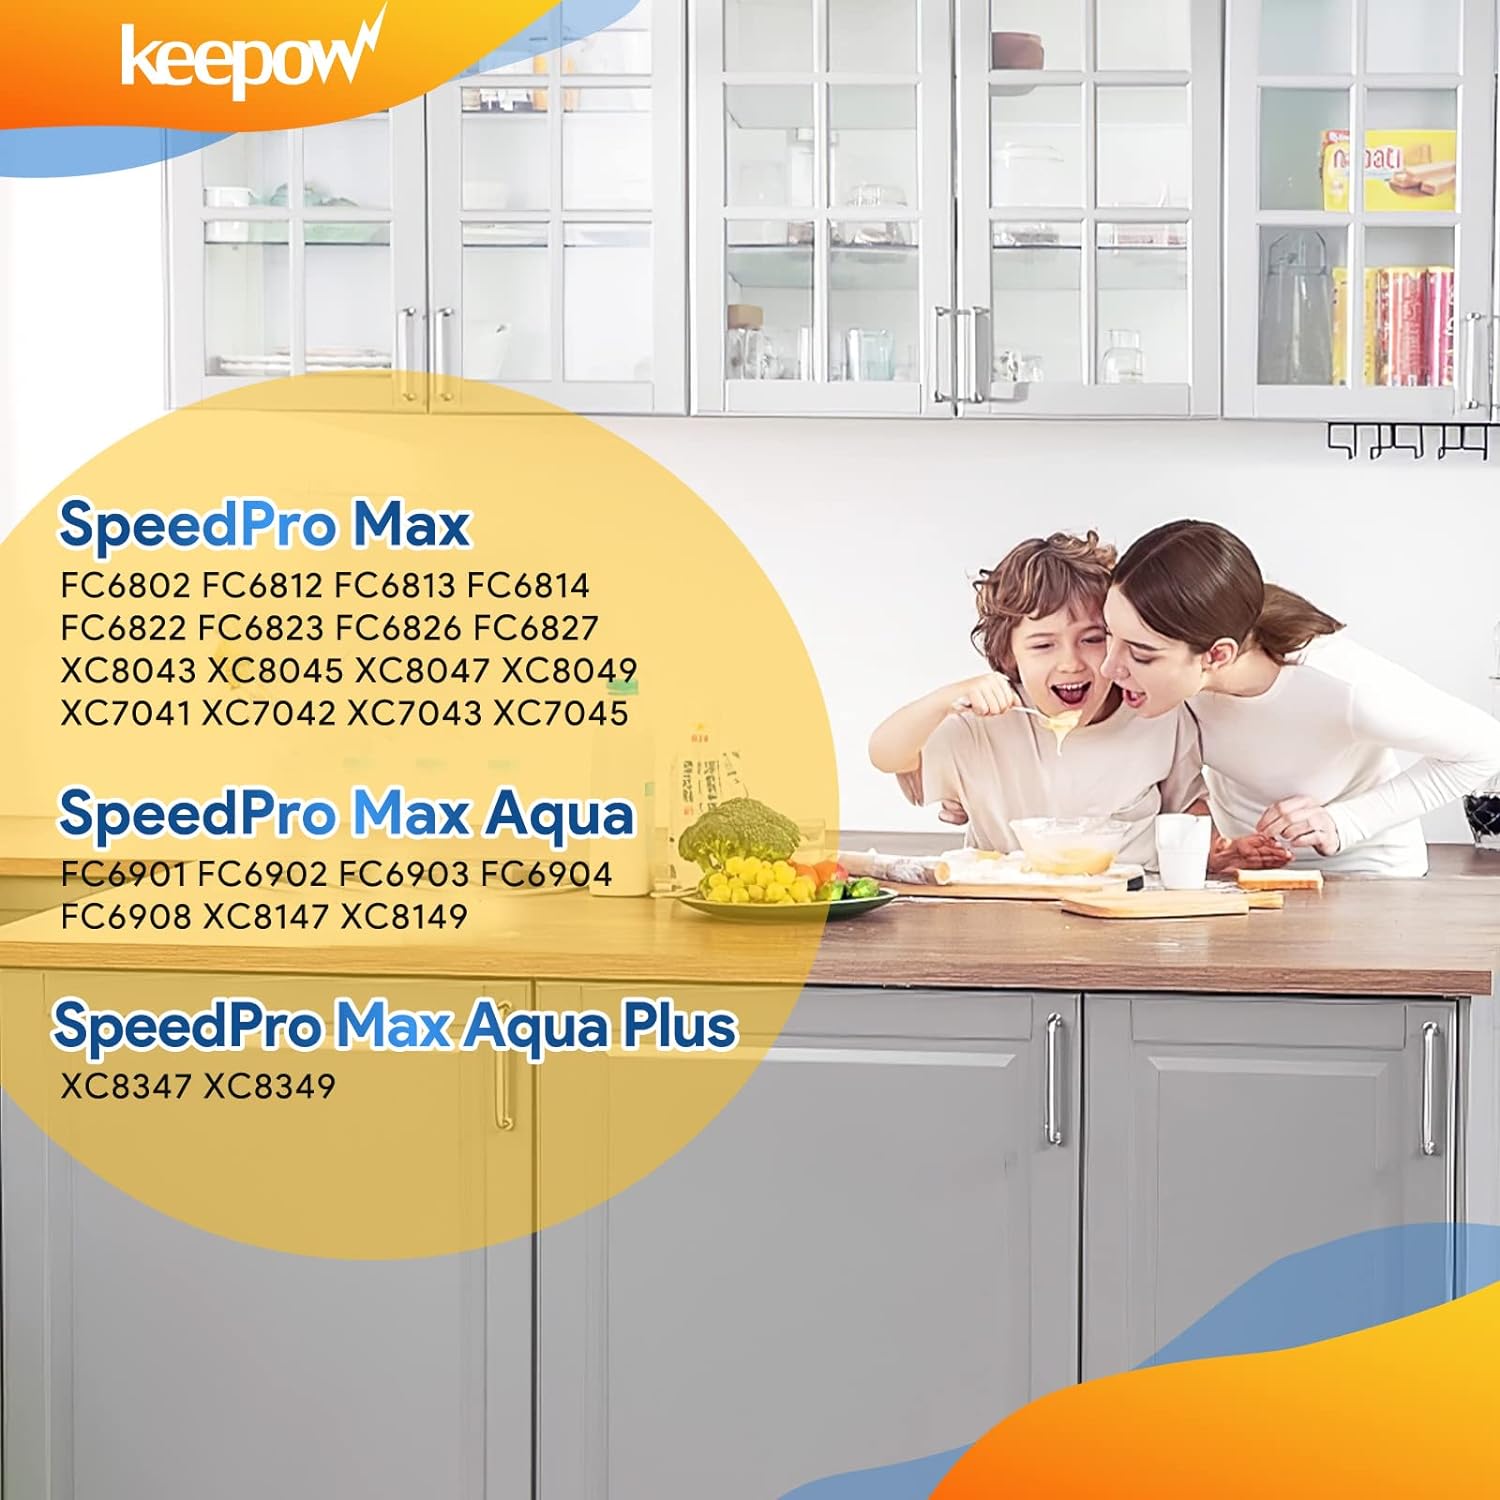 KEEPOW 4706F 3 filtri FC5005/01 per aspirapolvere Philips SpeedPro Max Aqua Plus FC6826 XC7042 XC8045 XC8147 XC8347, filtro di ricambio accessori per aspirapolvere Philips Speedpro Max